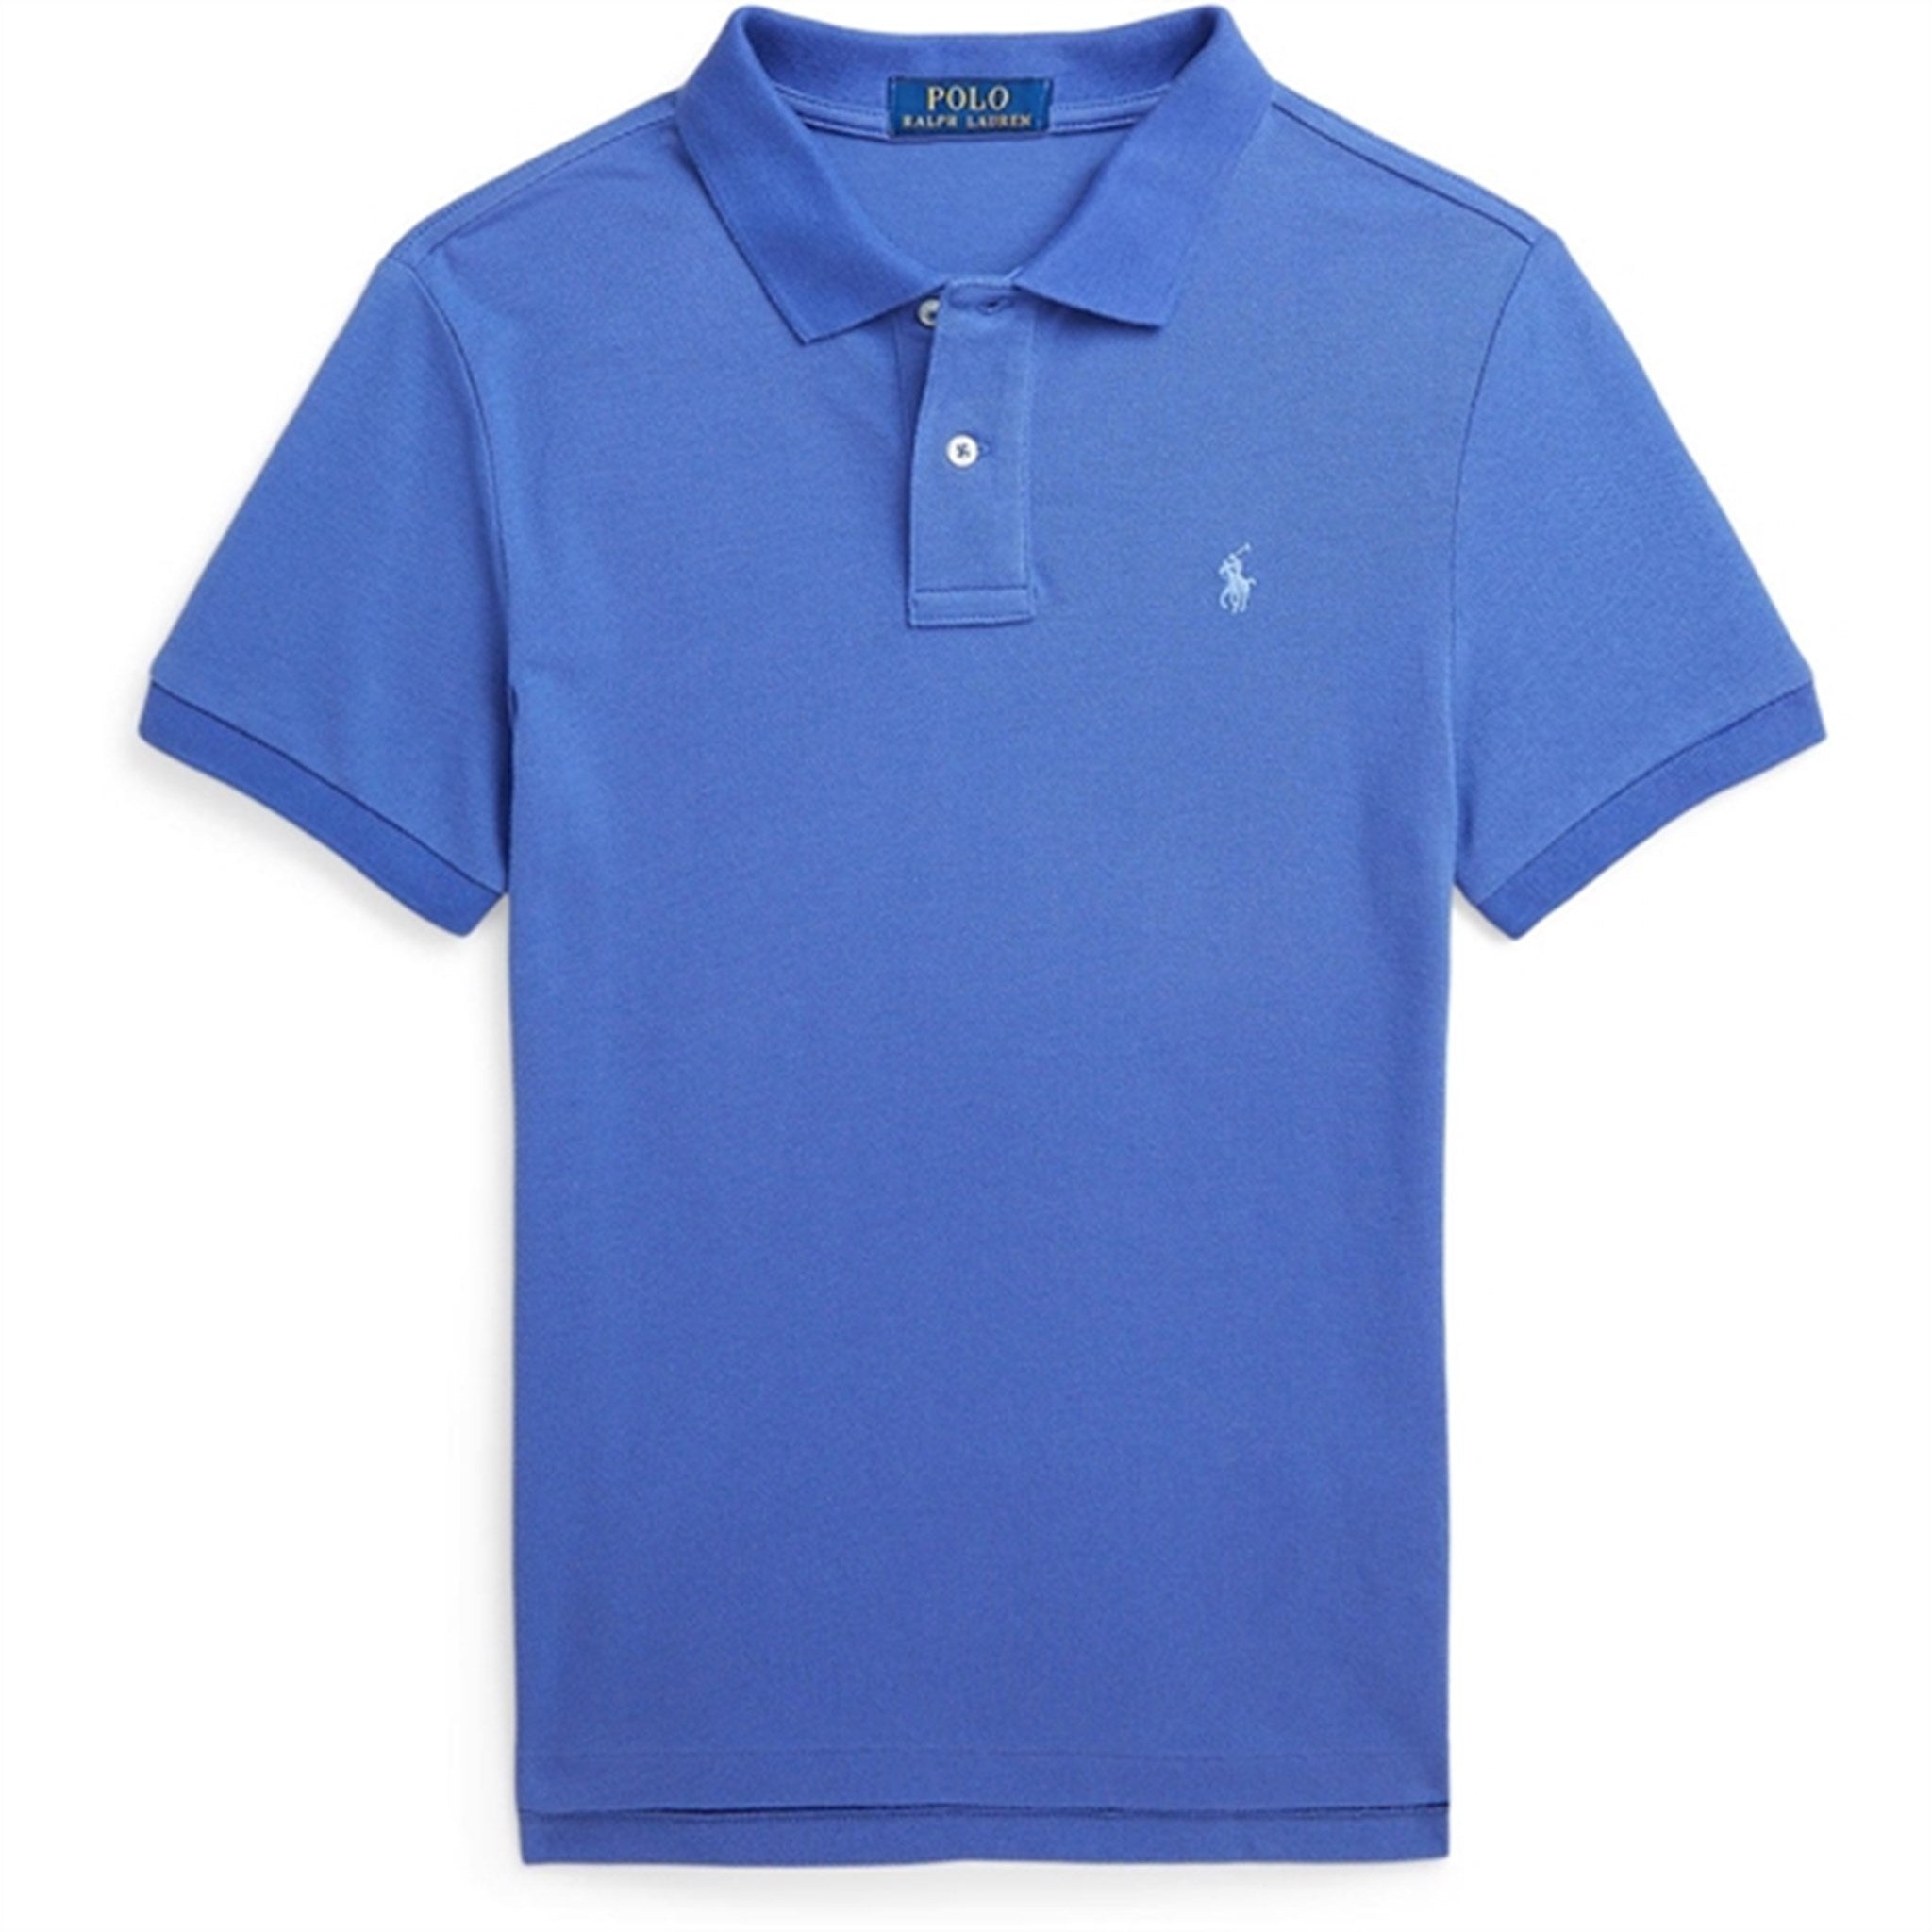 Polo Ralph Lauren Boys Polo Shirt Liberty Blue